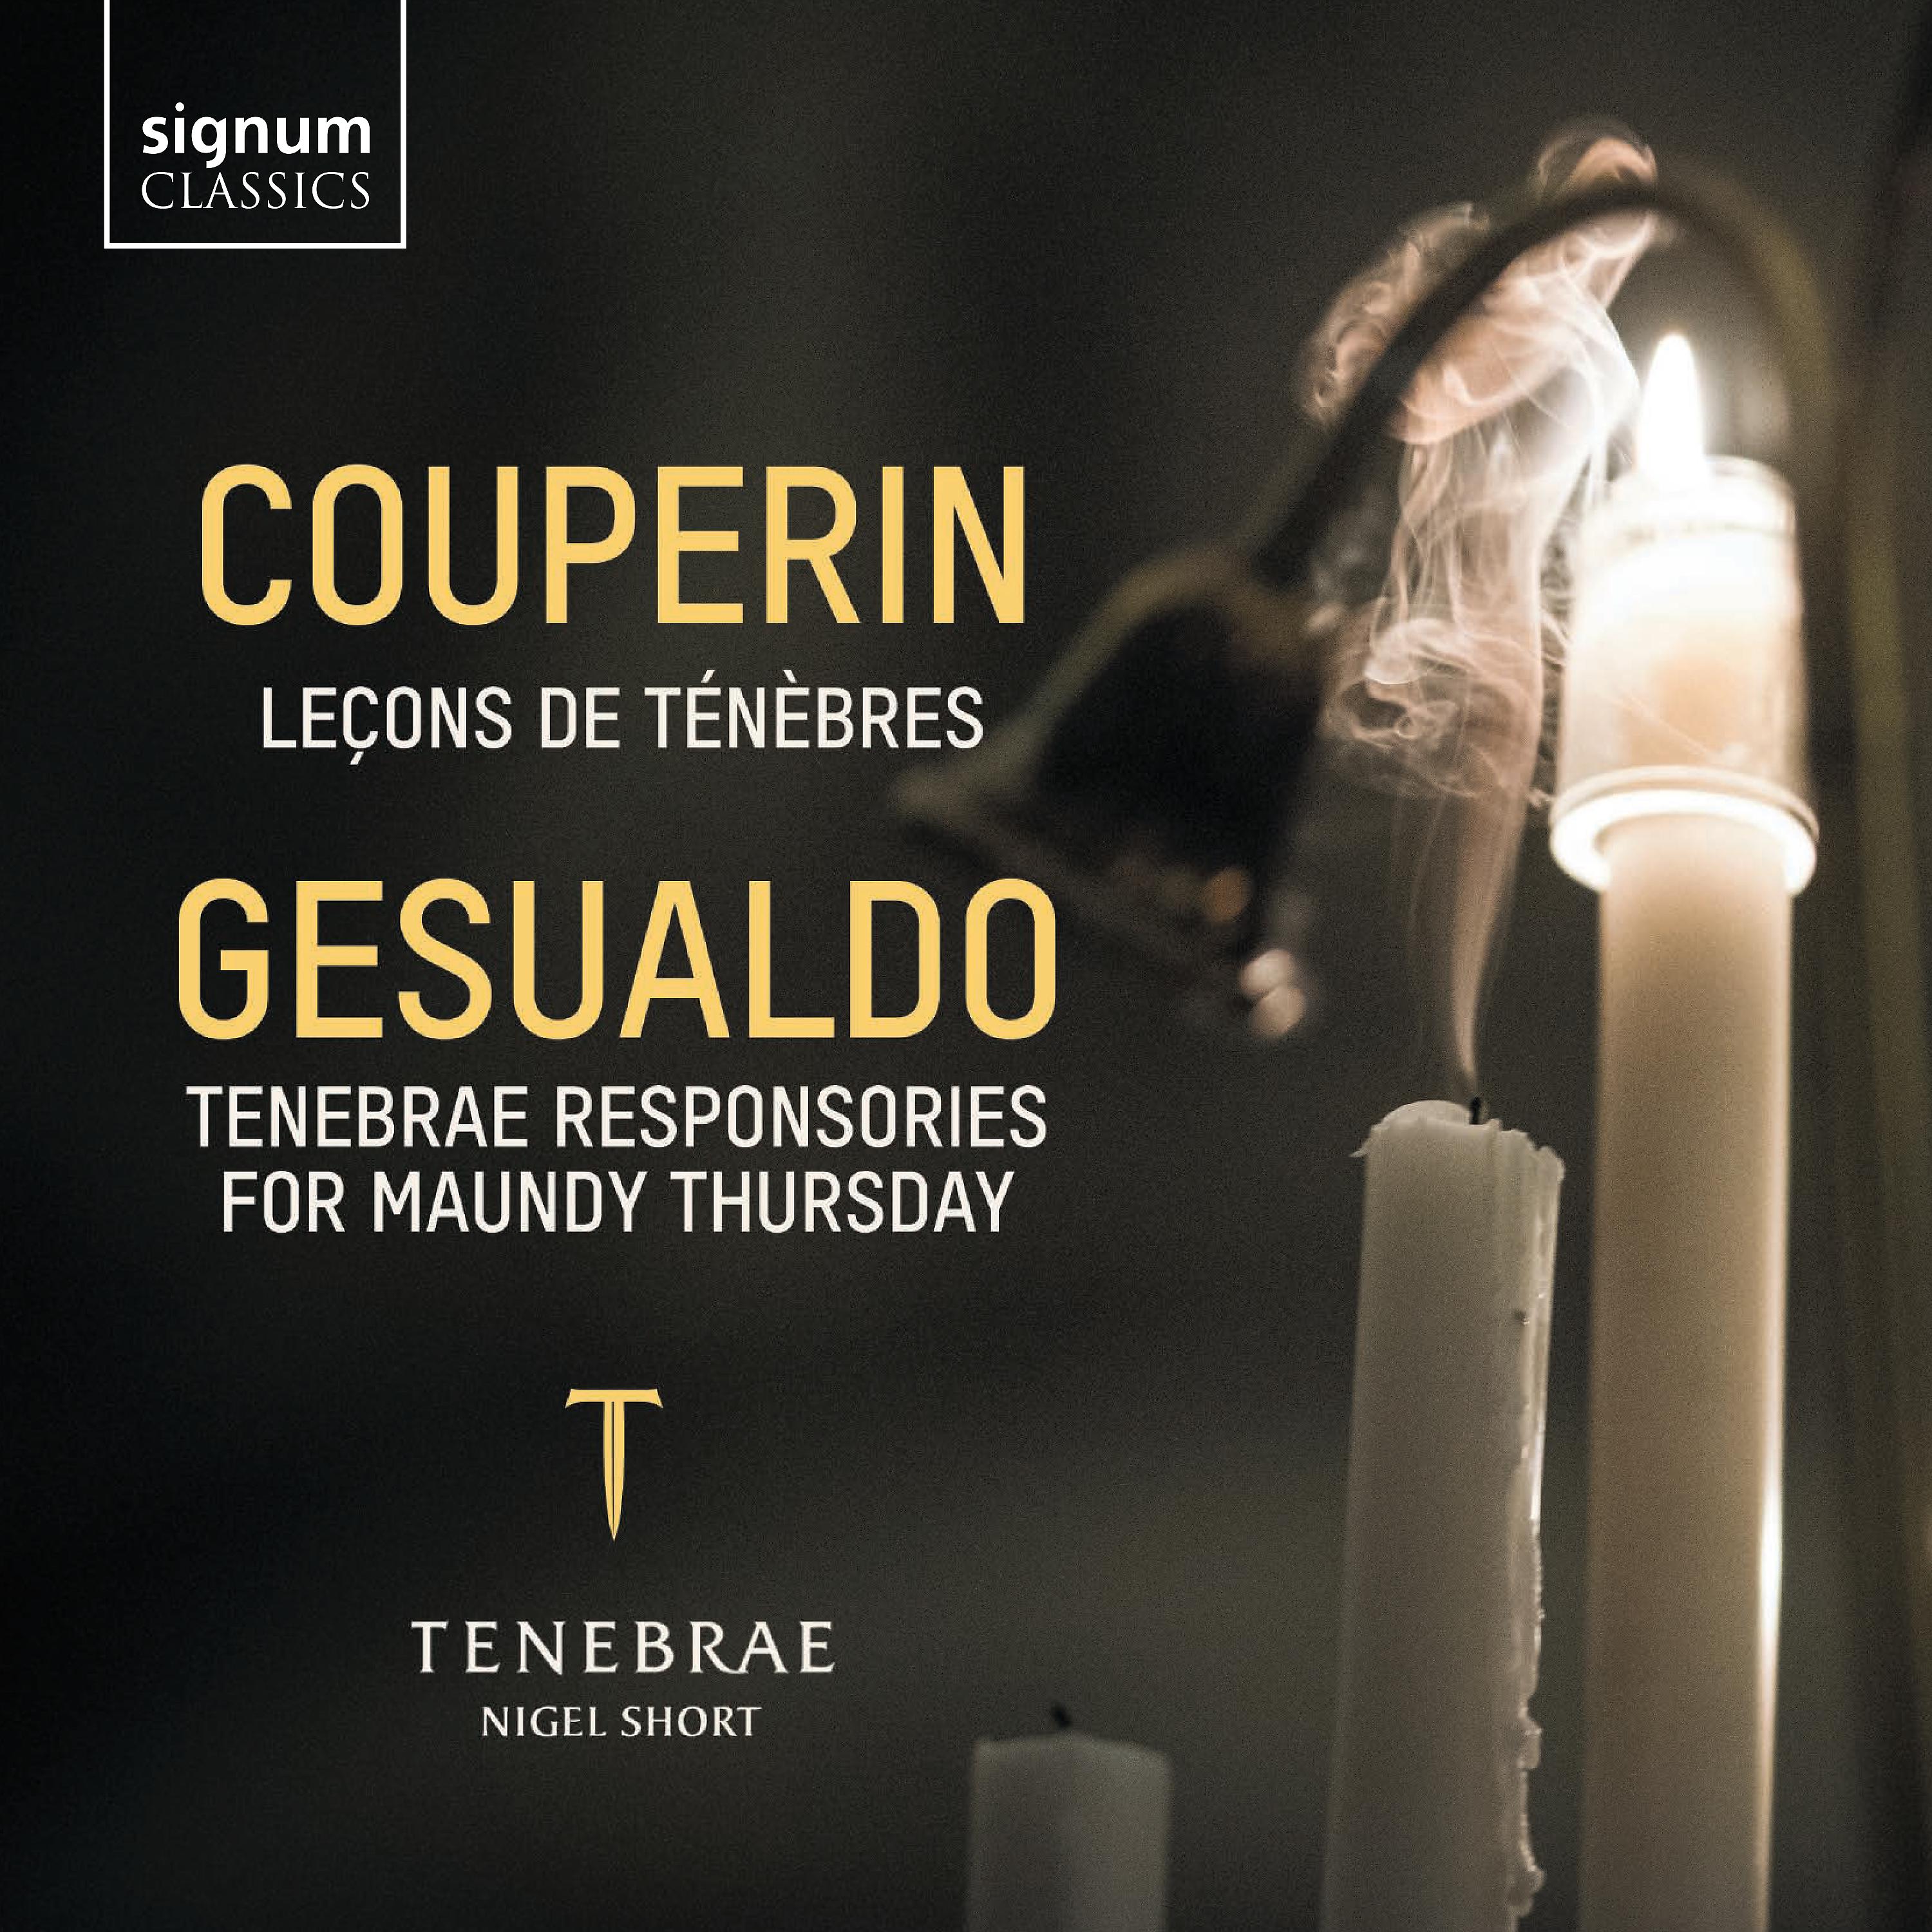 Постер альбома Tenebrae Responsories for Maundy Thursday, Second Nocturn: Unus ex discipulis meis